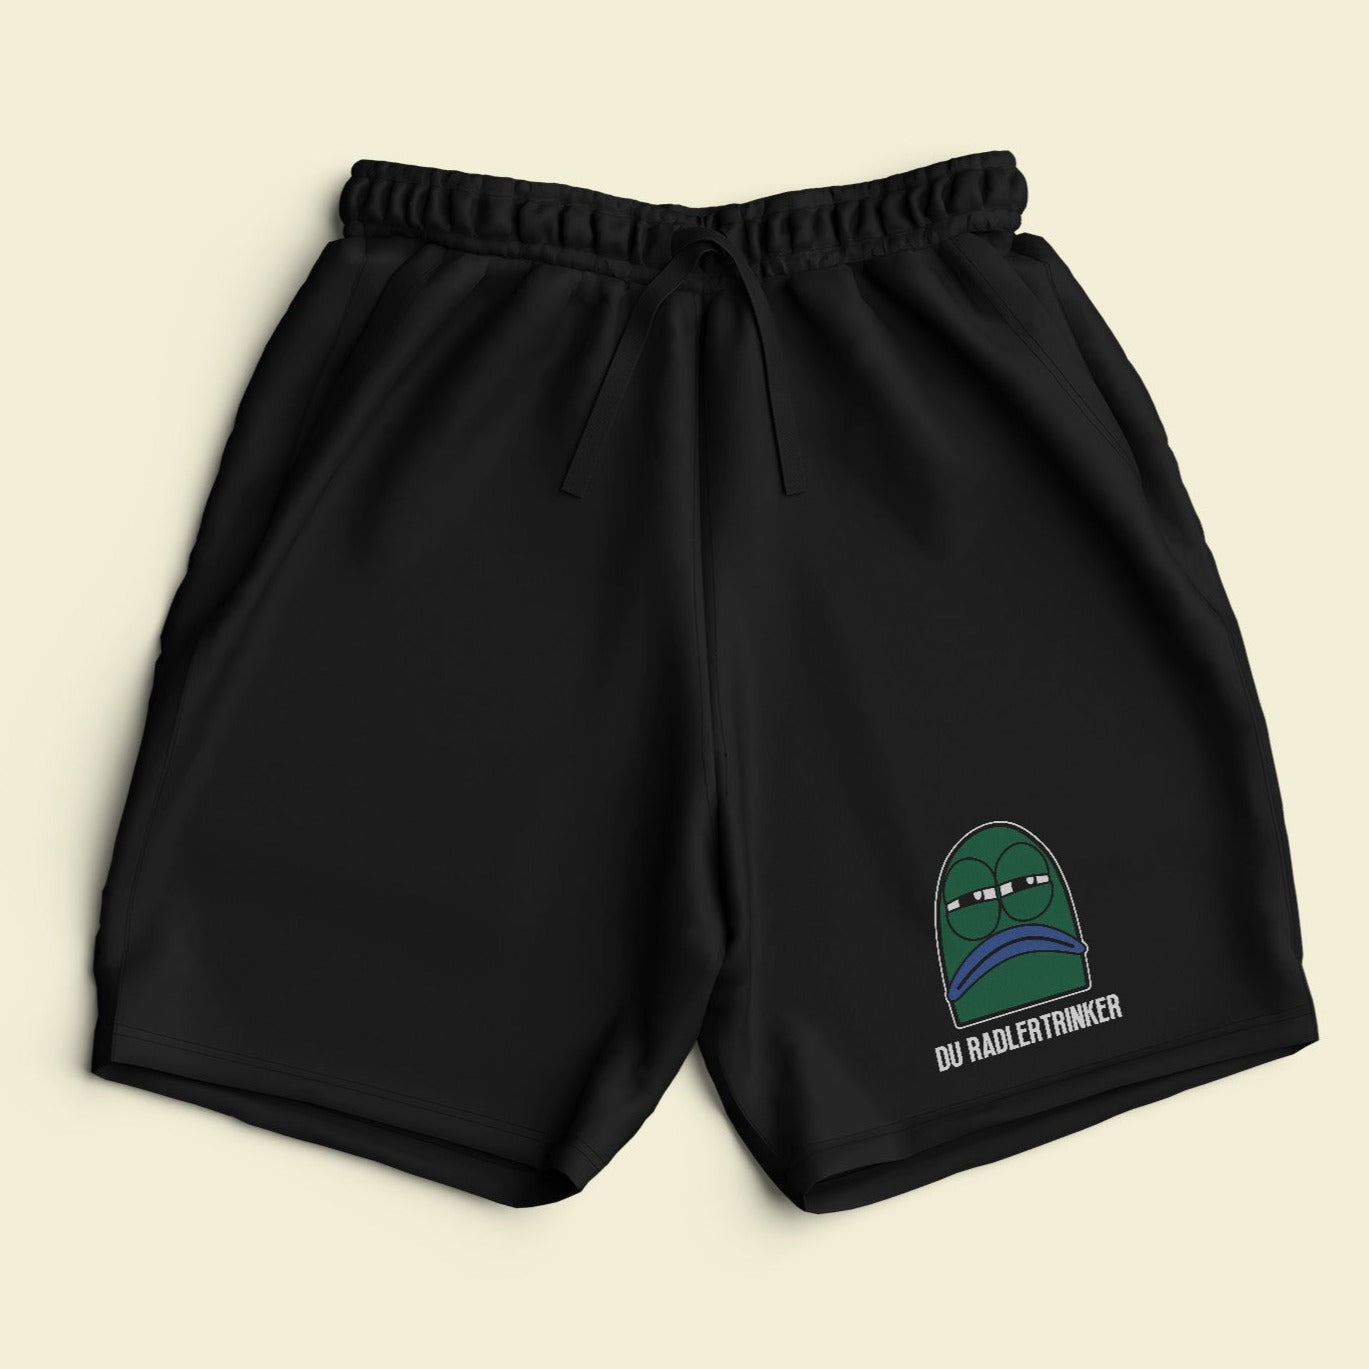 DU RADLERTRINKER - Premium Shorts